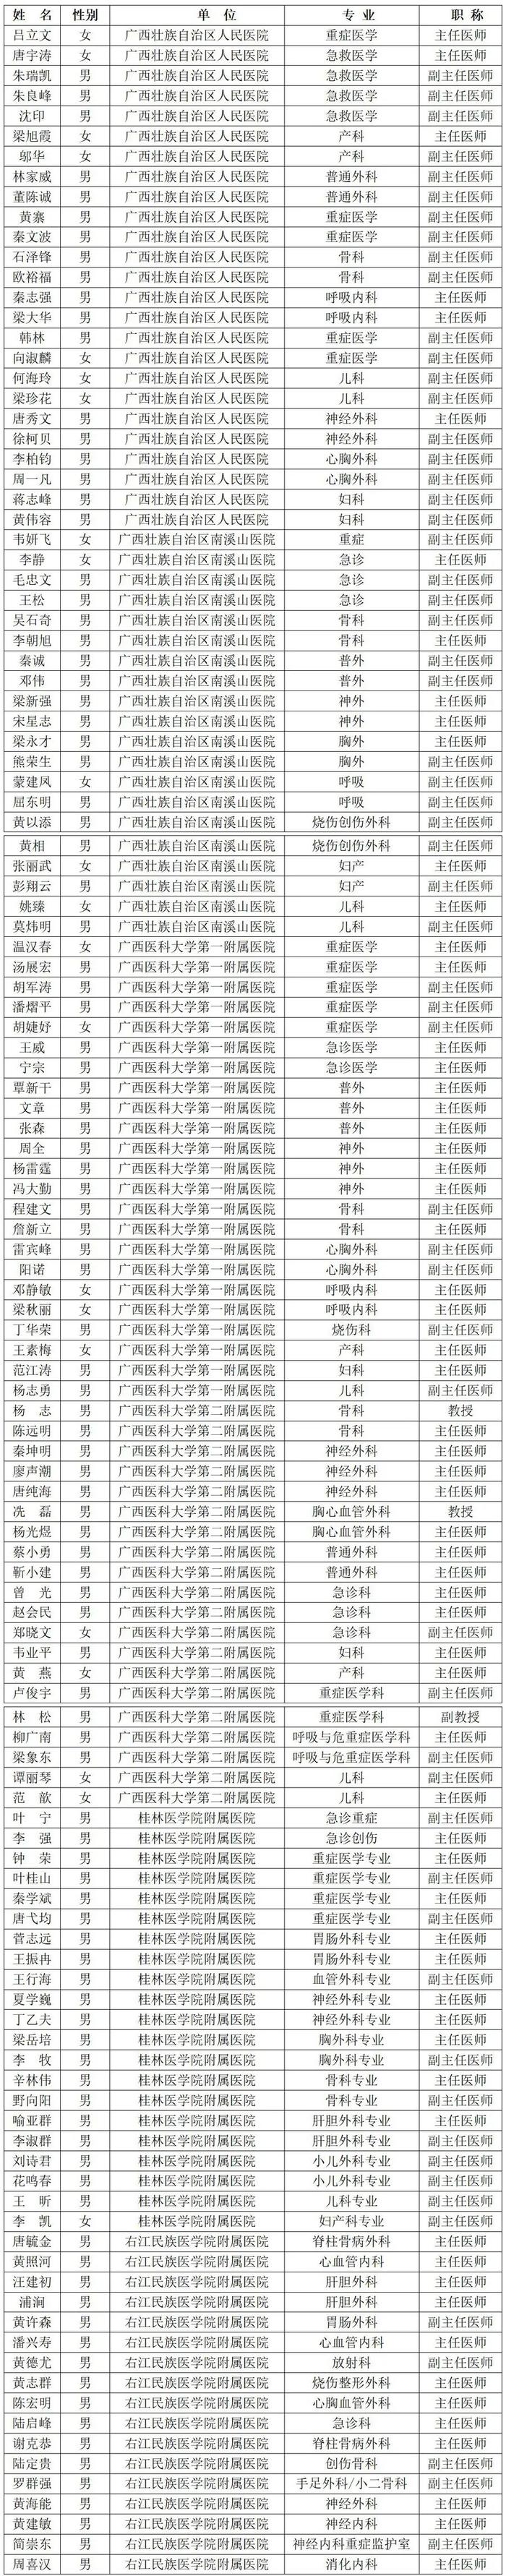 广西公布交通事故救援点、救治专业医院及重伤救治专家库名单